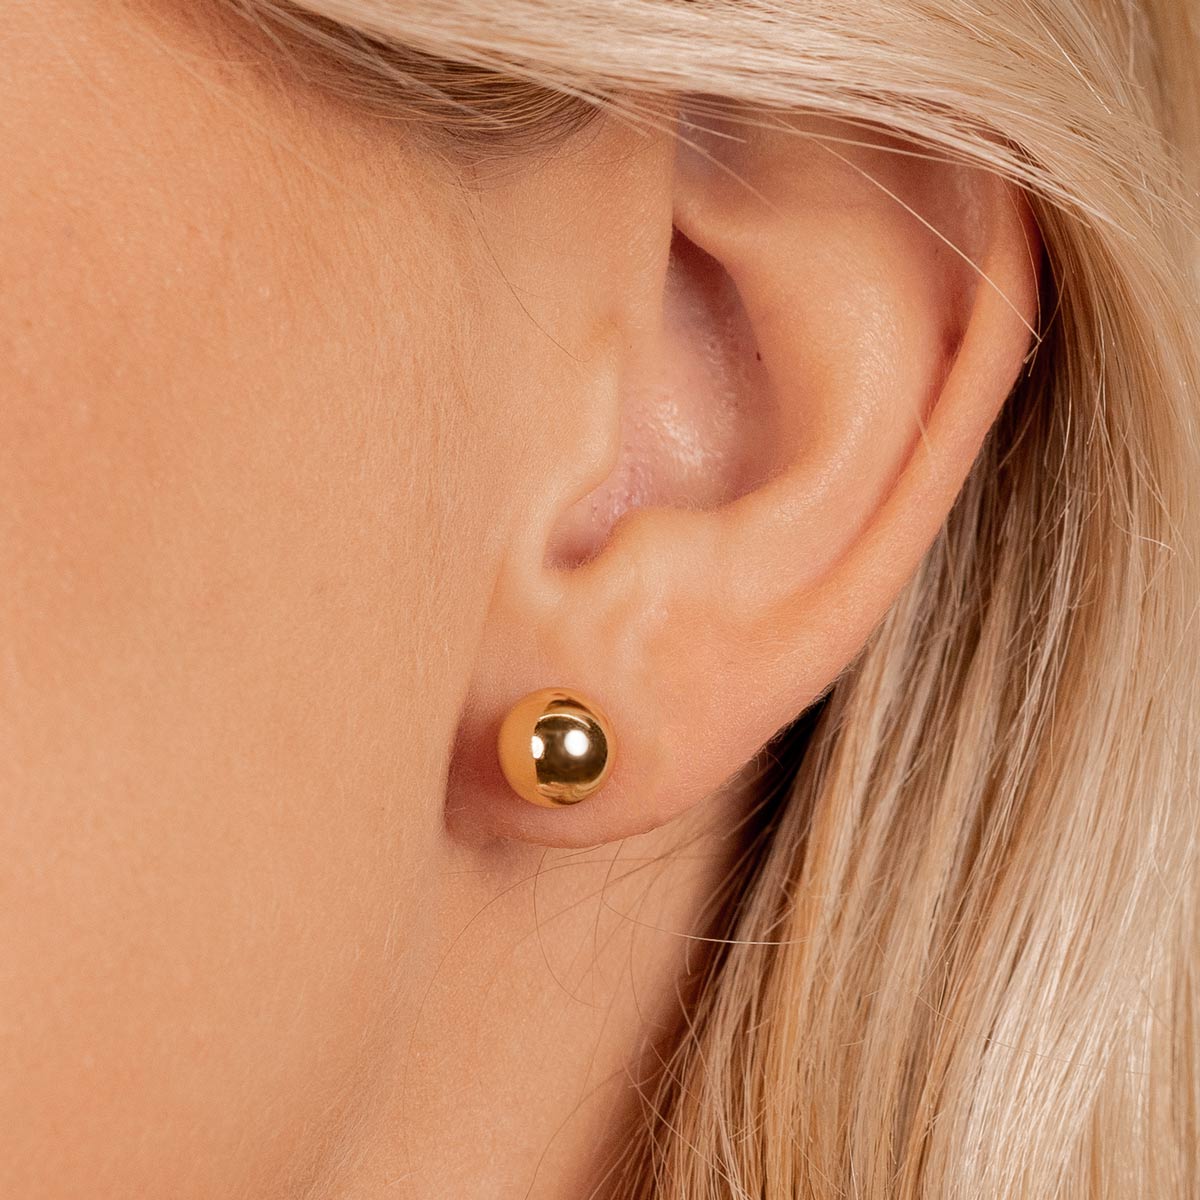 Minimalist Ball Stud Earrings | Dainty Everyday Earrings | IB Jewelry